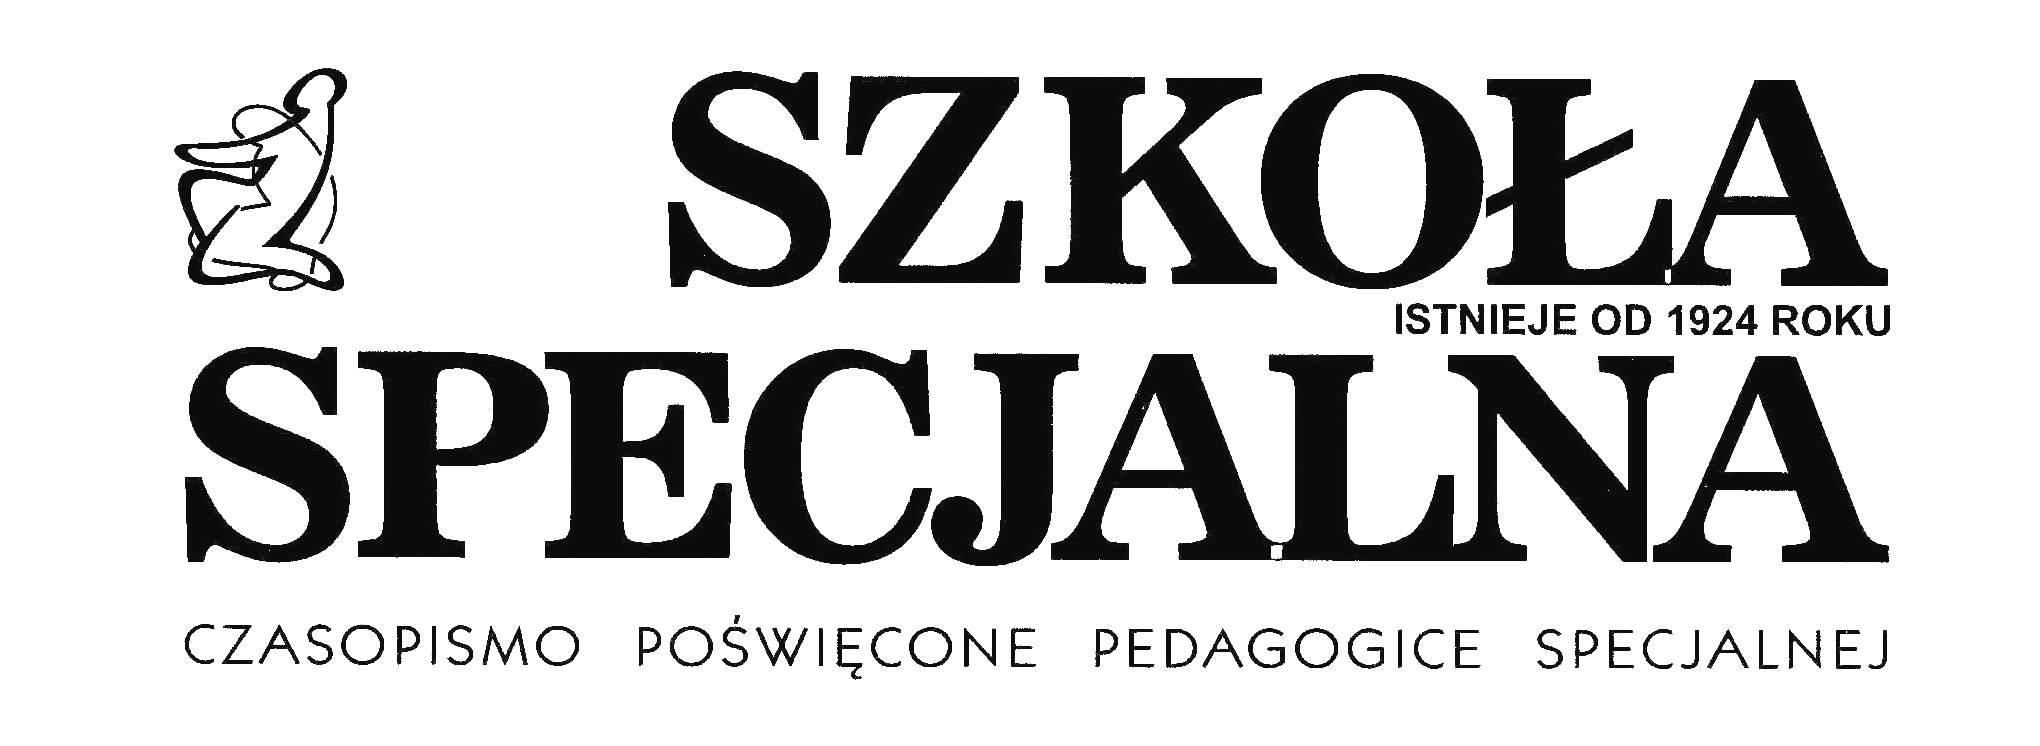 логотип журнала szkoła specjalna